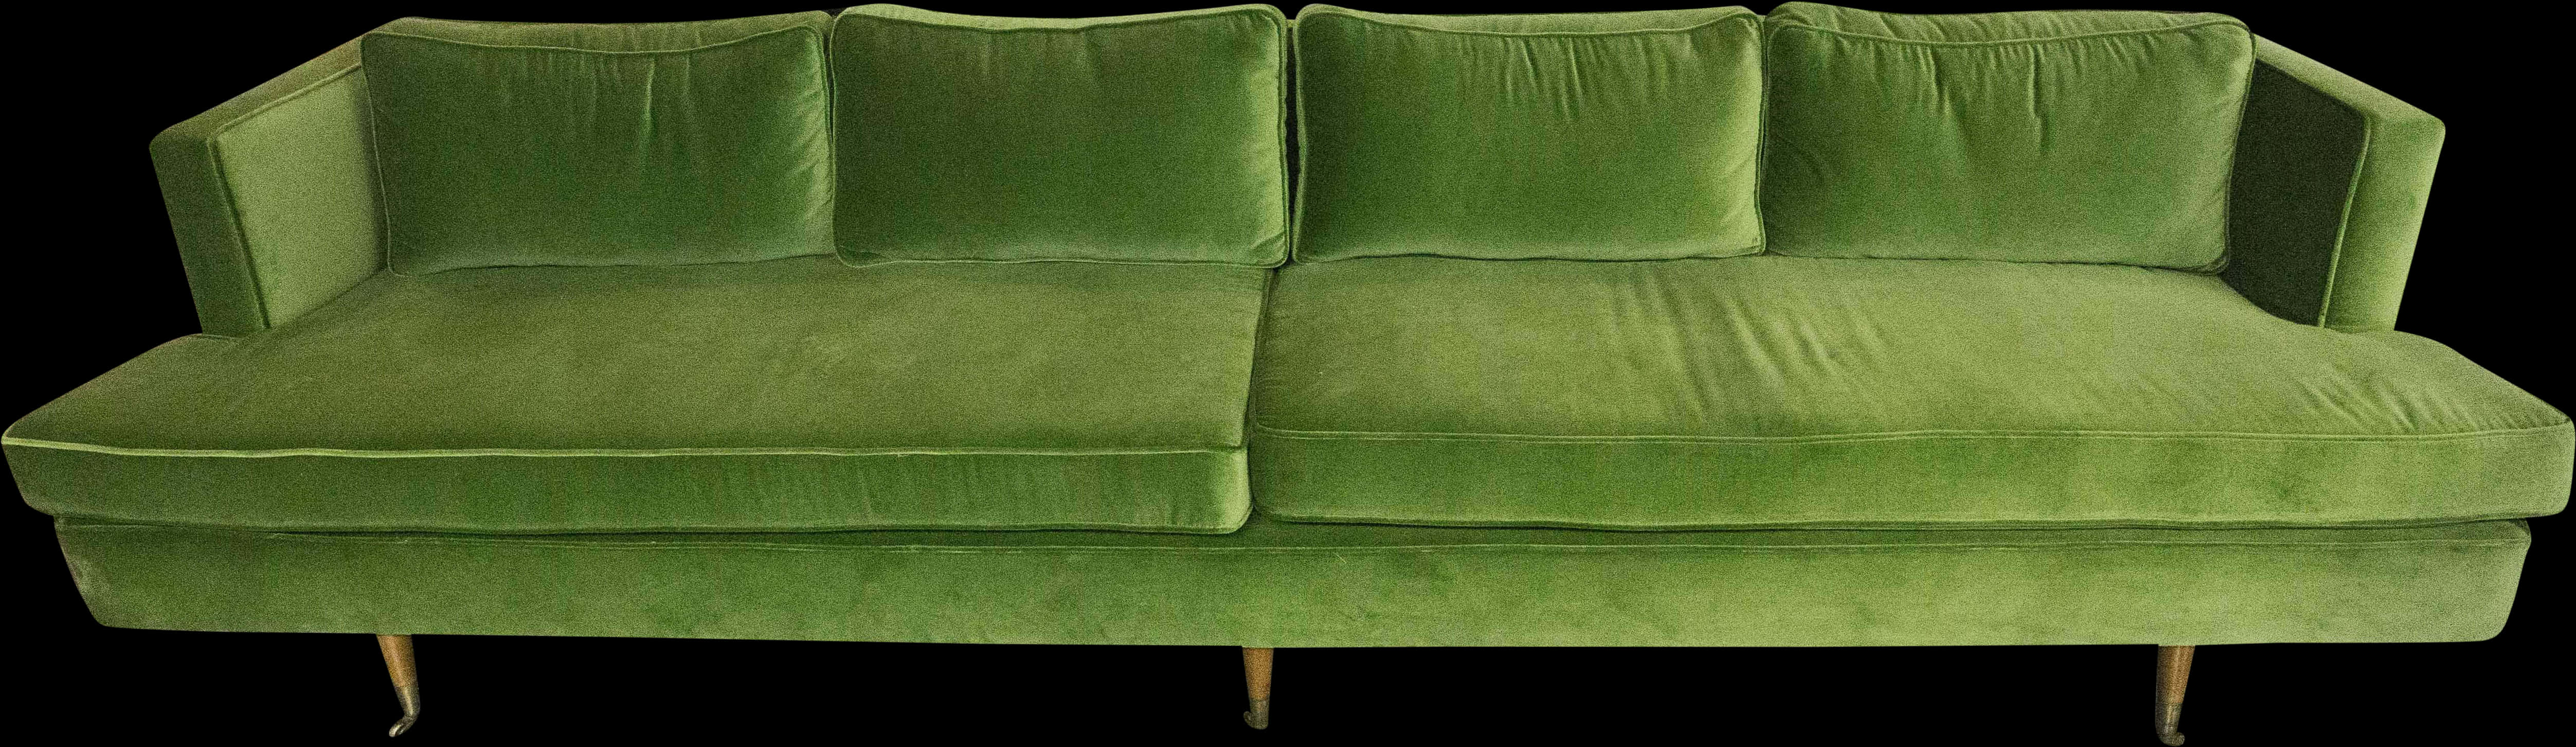 Green Velvet Sofa Elegant Design PNG image